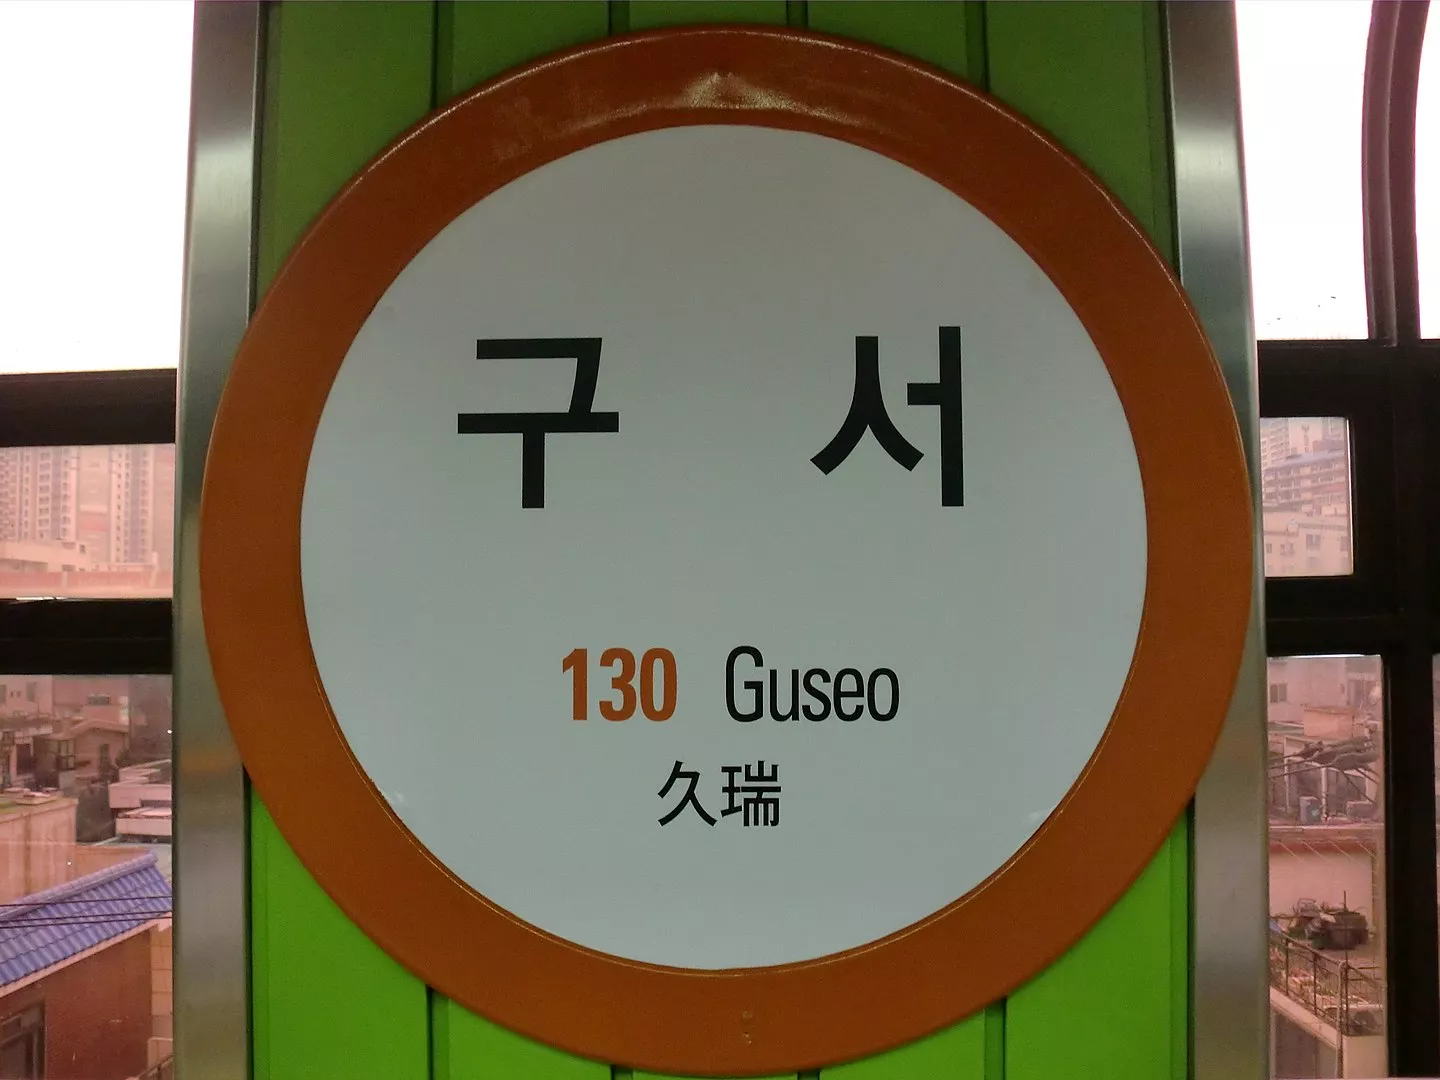 Guseo Station - 구서역 - Busan - South Korea